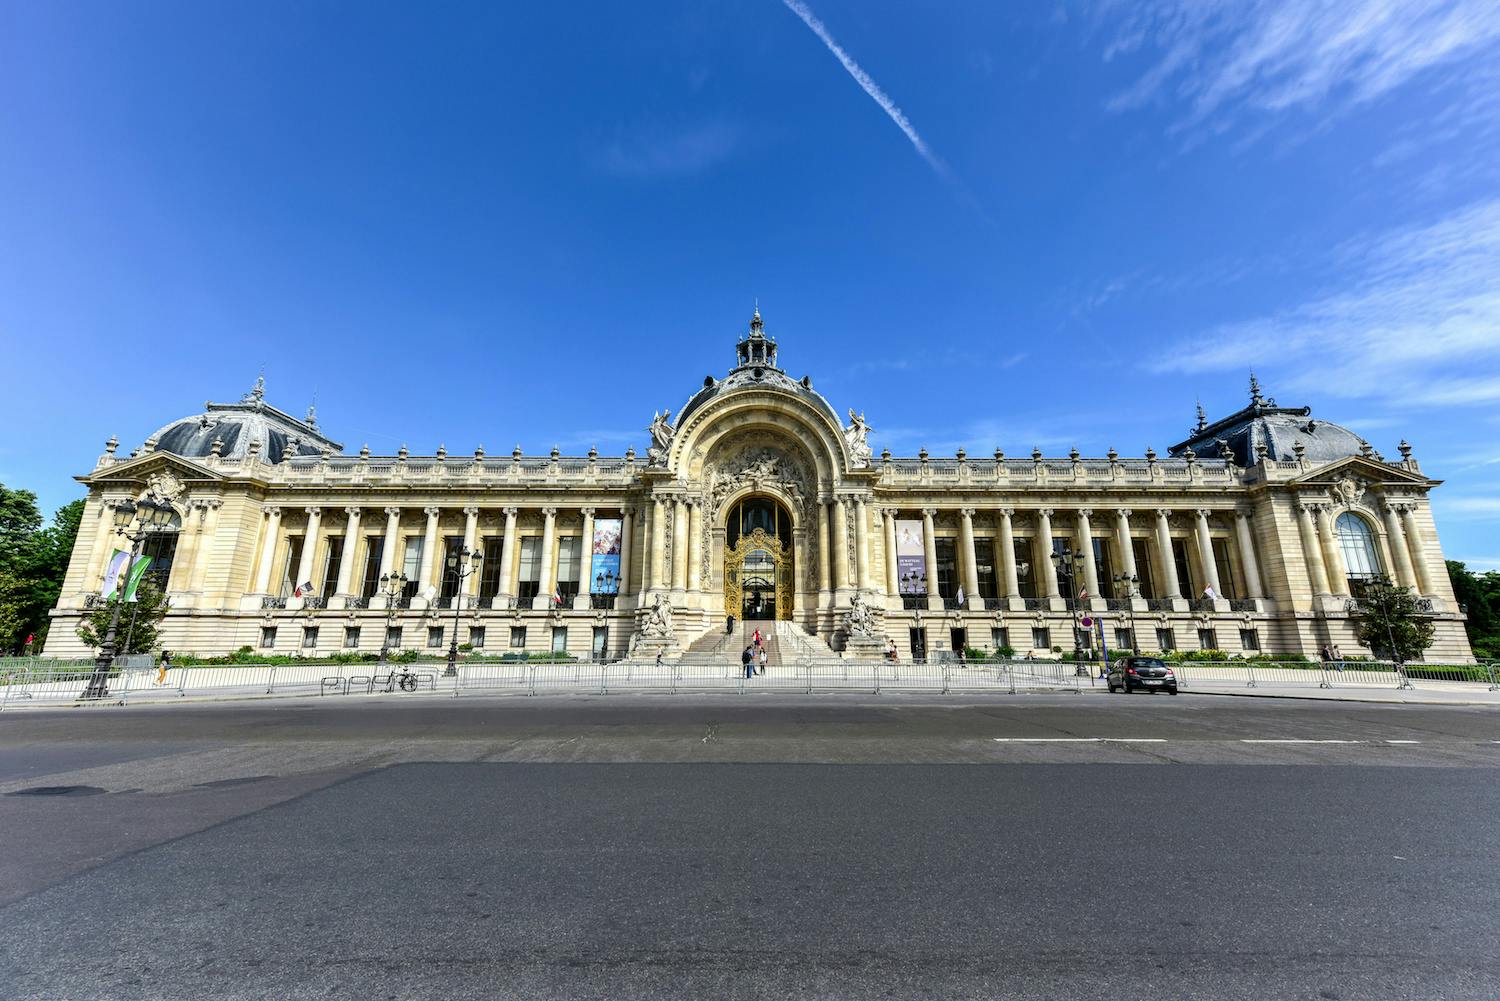 The Petit Palais